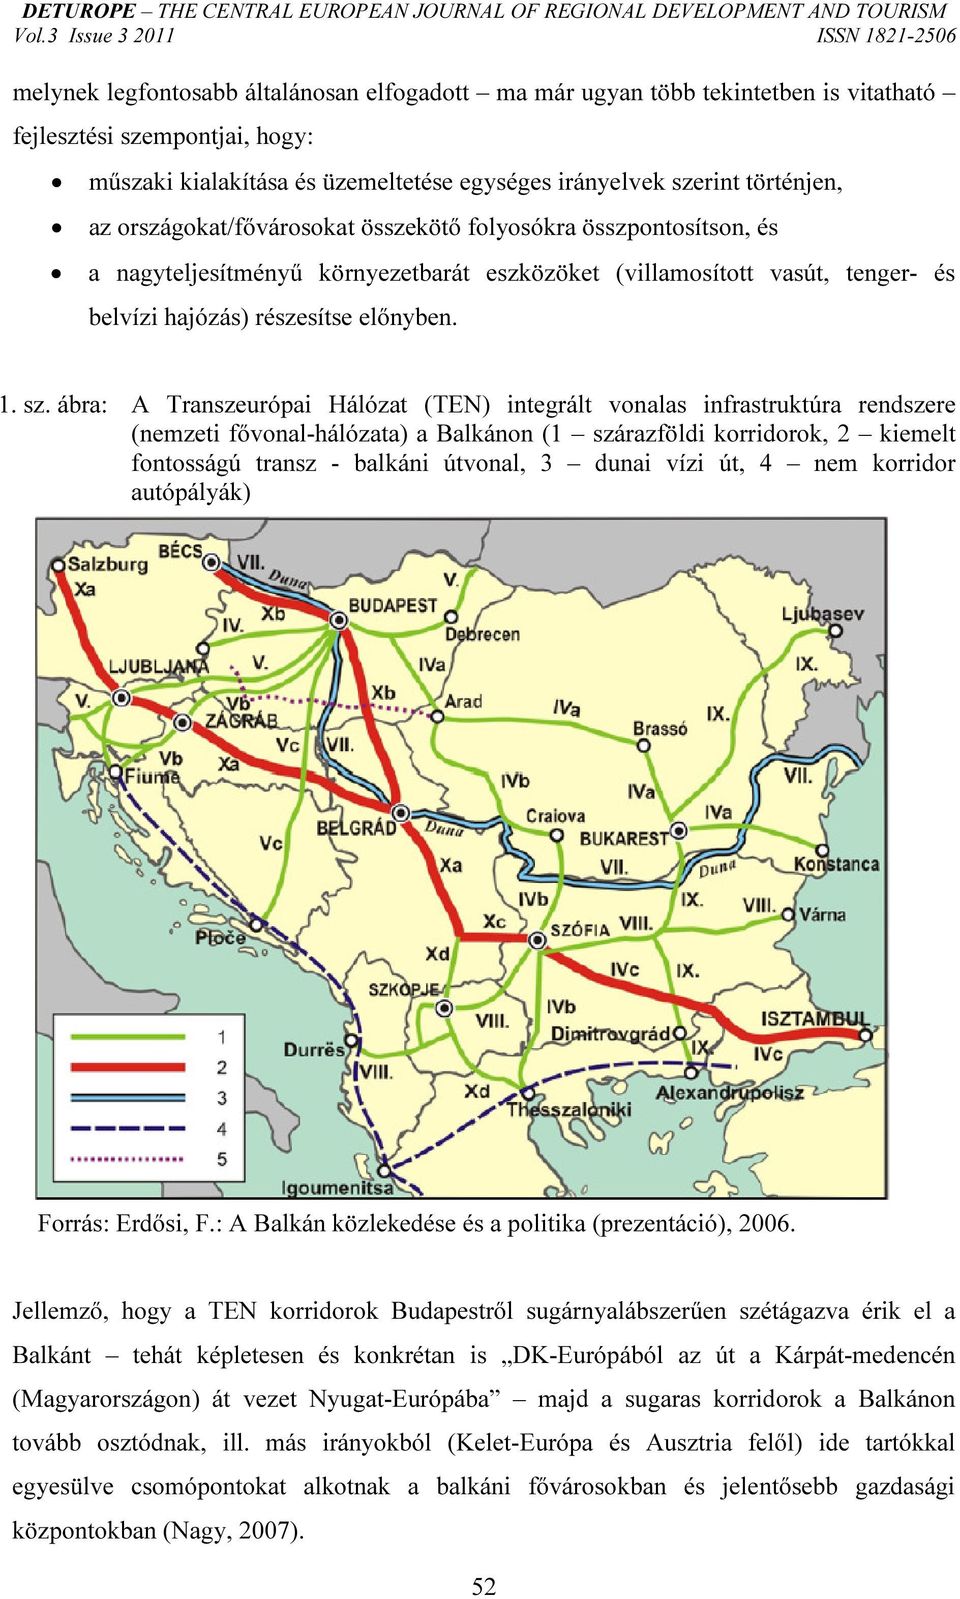 ábra: A Transzeurópai Hálózat (TEN) integrált vonalas infrastruktúra rendszere (nemzeti fővonal-hálózata) a Balkánon (1 szárazföldi korridorok, 2 kiemelt fontosságú transz - balkáni útvonal, 3 dunai